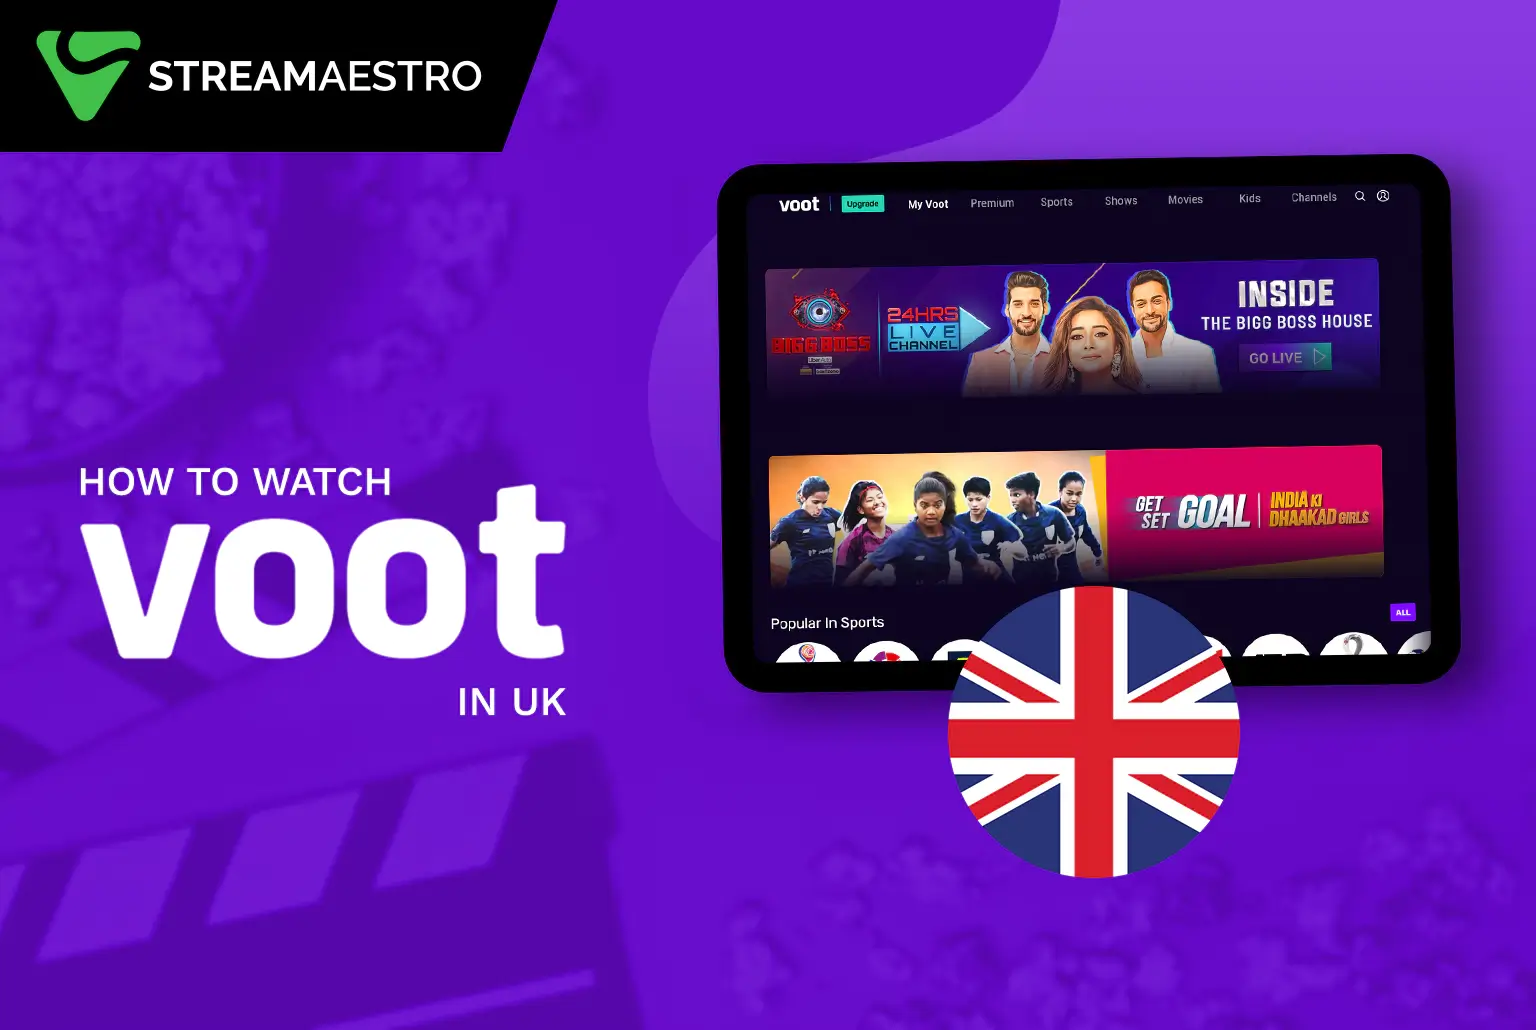 Watch Voot in UK